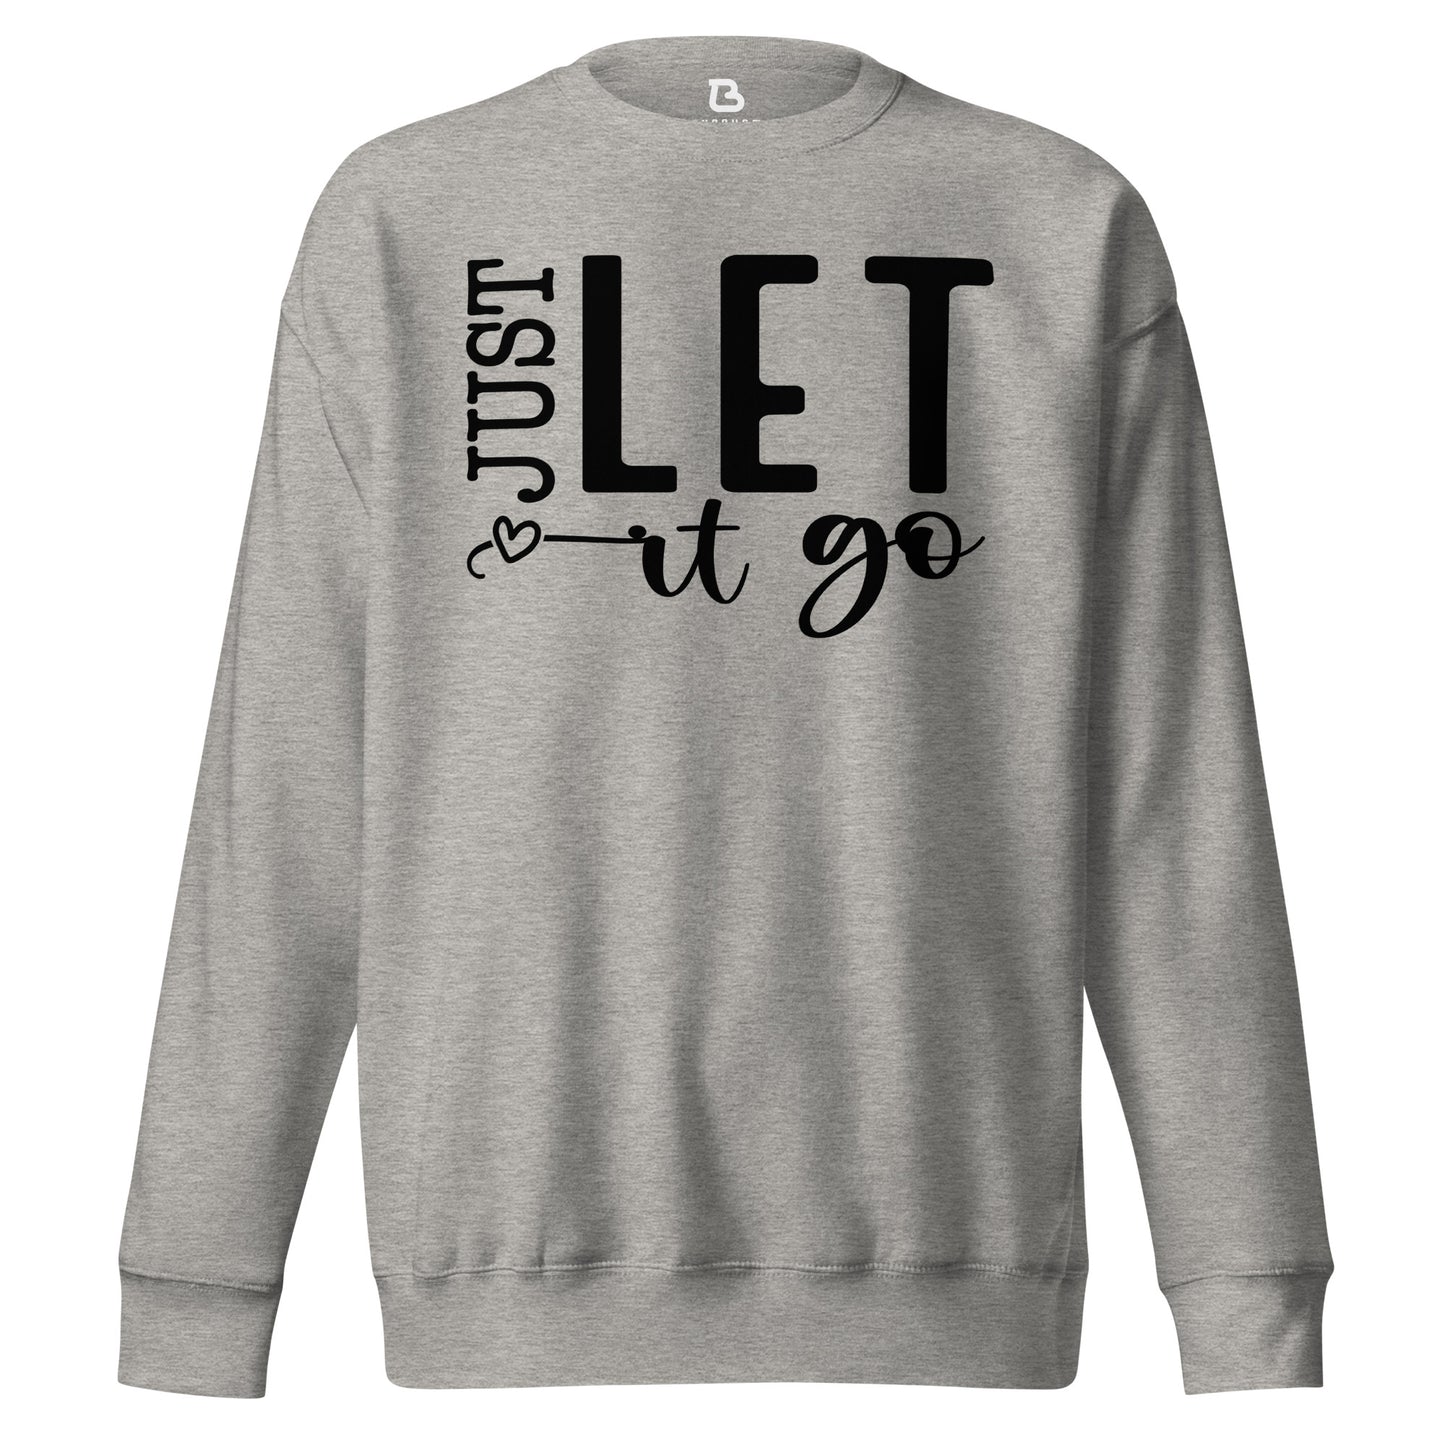 Unisex Premium Sweatshirt - Just Let It Go